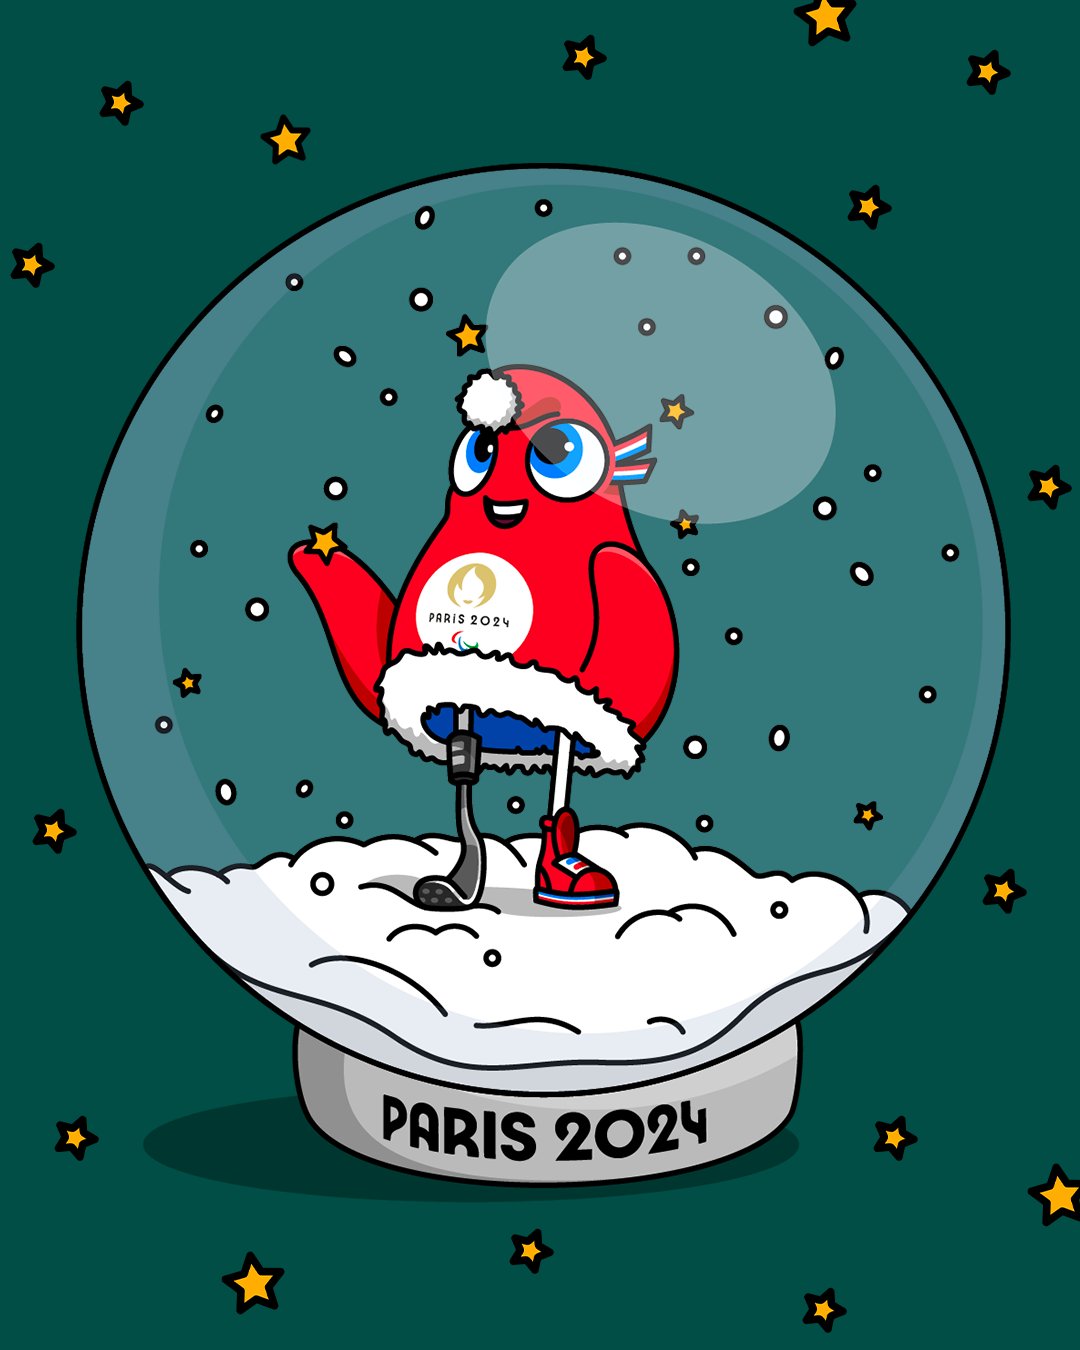 Paris 2024 on X: A sky full of stars for the Paralympic Phryge ! Enjoy the  Winter season ❄️ Un ciel plein d'étoile pour la Phryge Paralympique !  Profitez bien de cette